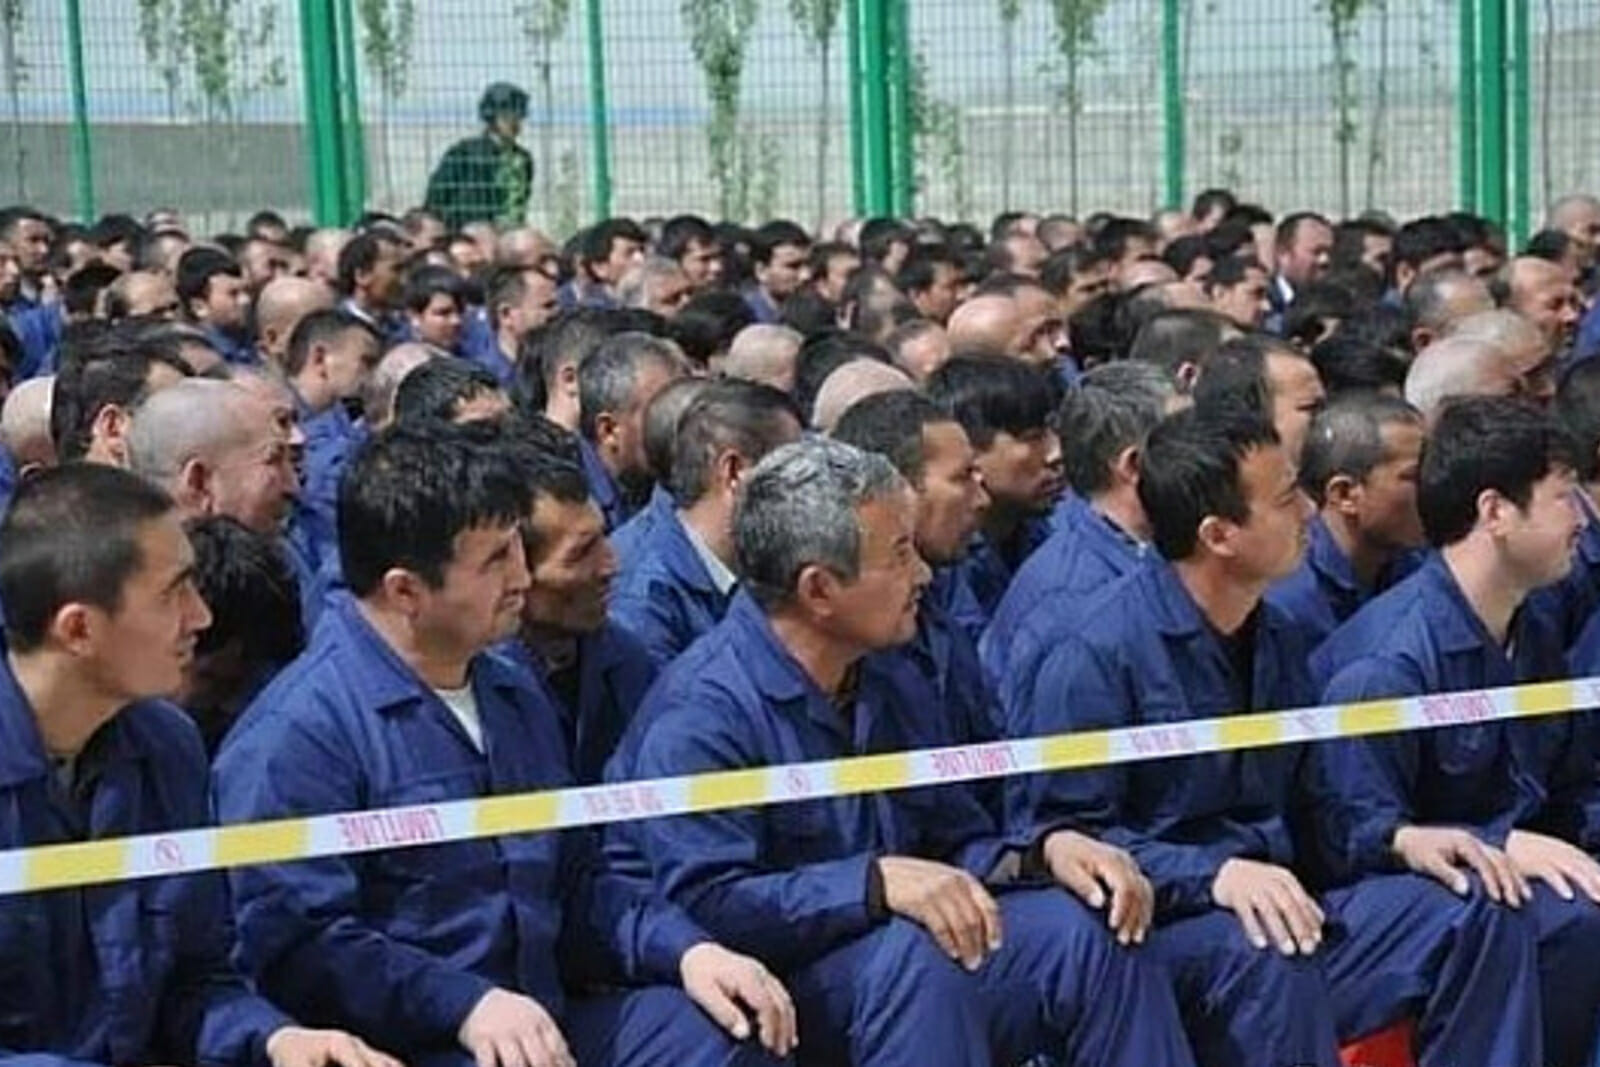 BM Uygur raporu sarsıcı